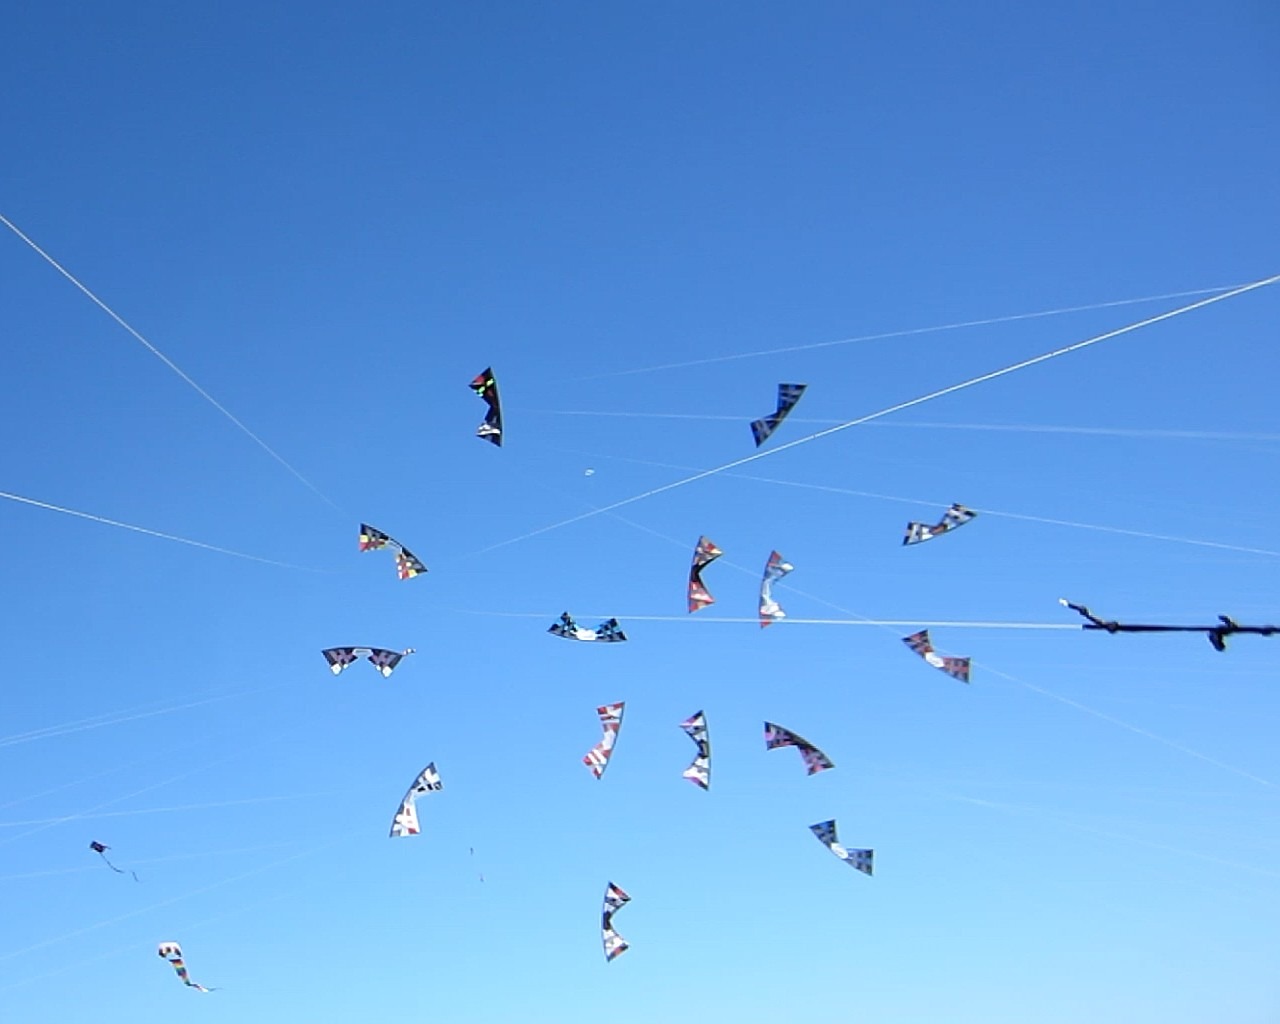 Flying kites in the sky